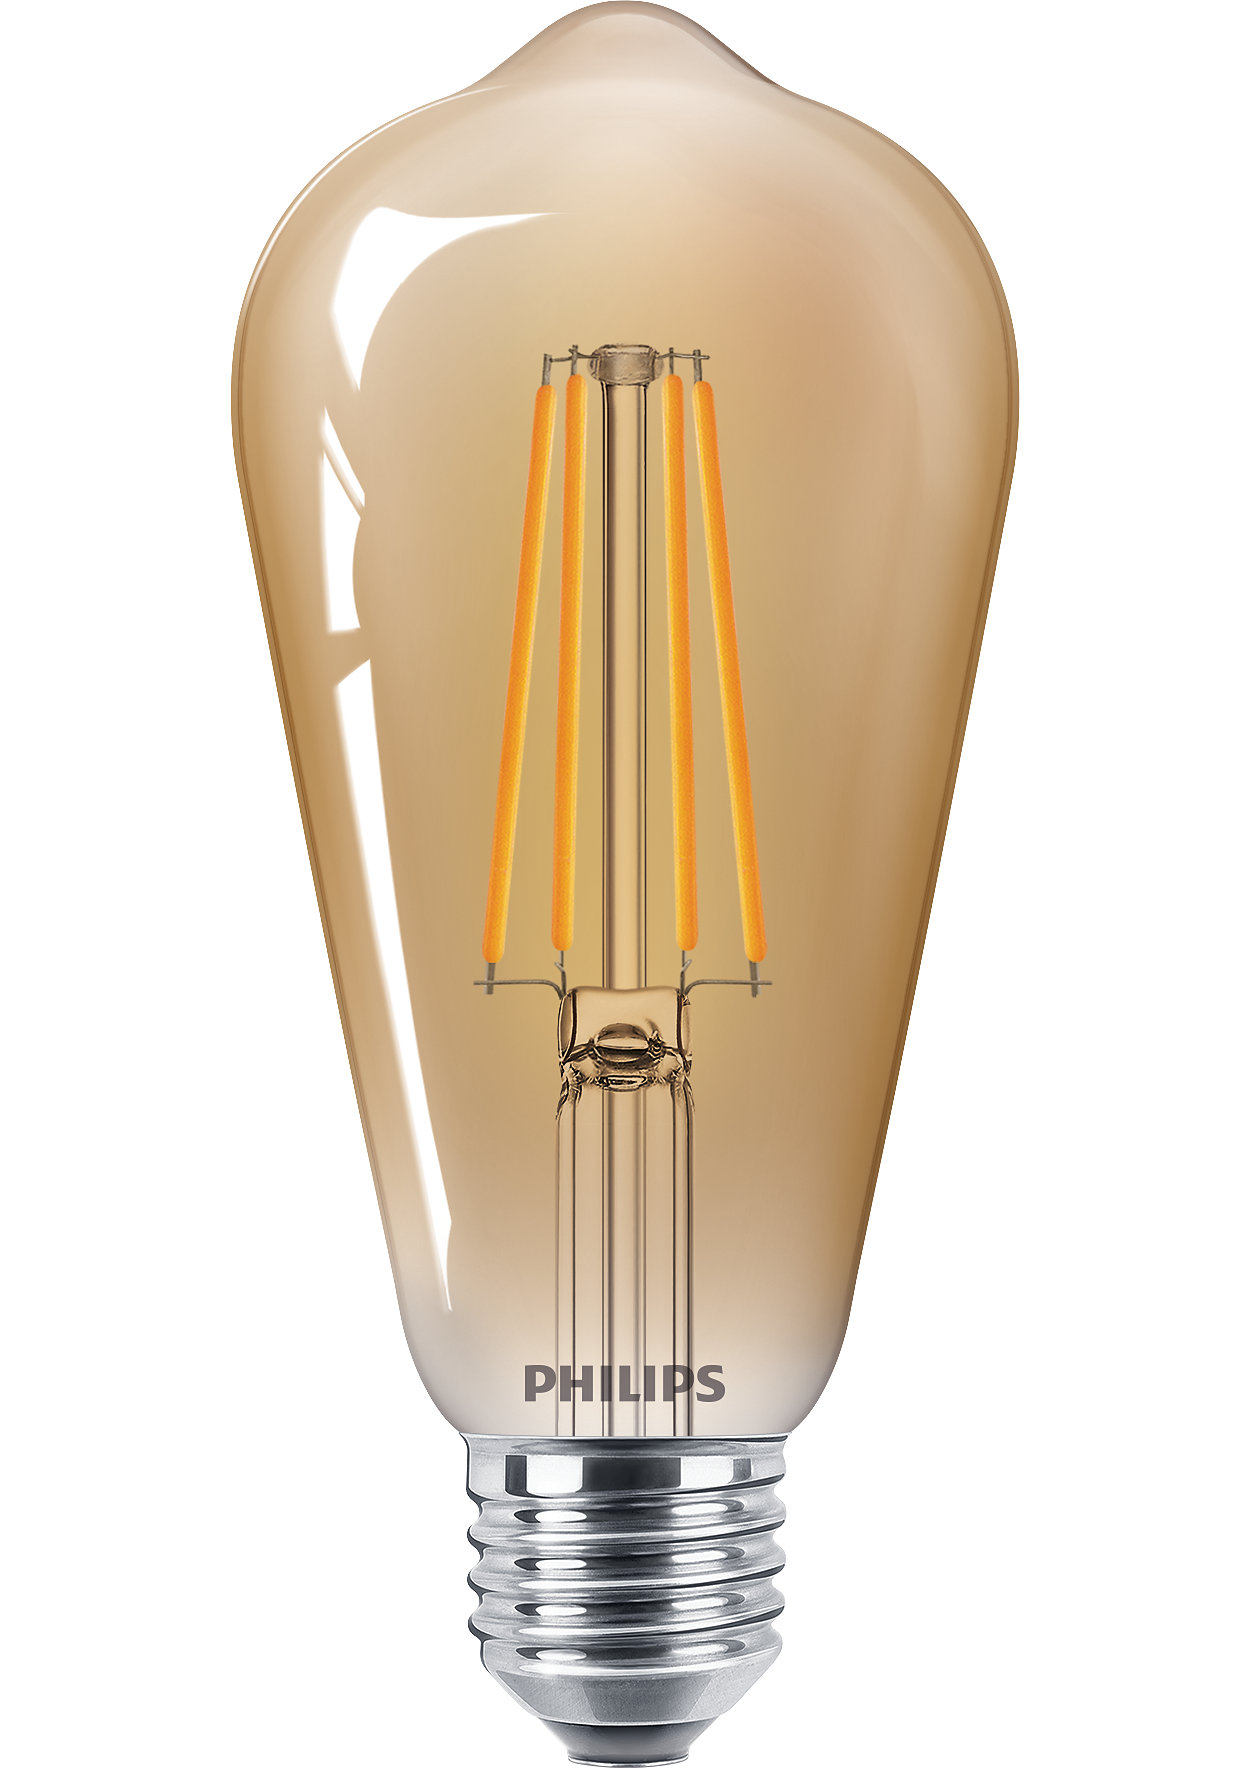 Klasické žárovky LEDbulb pro dekorativní osvětlení